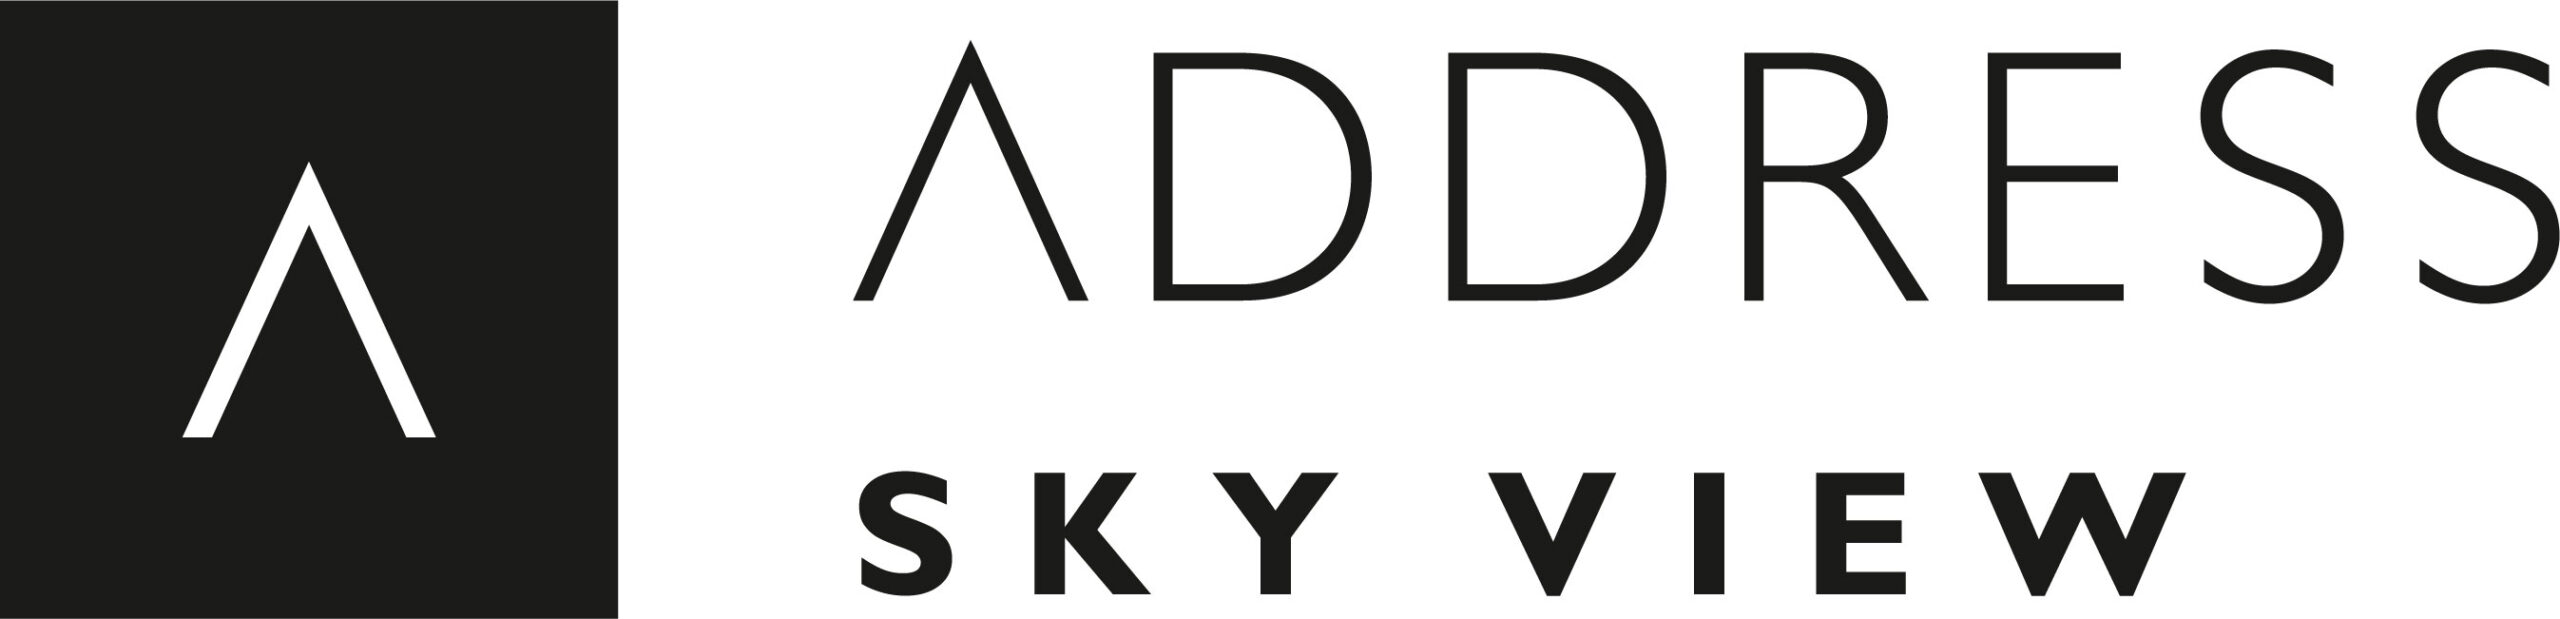 Address Sky View logo